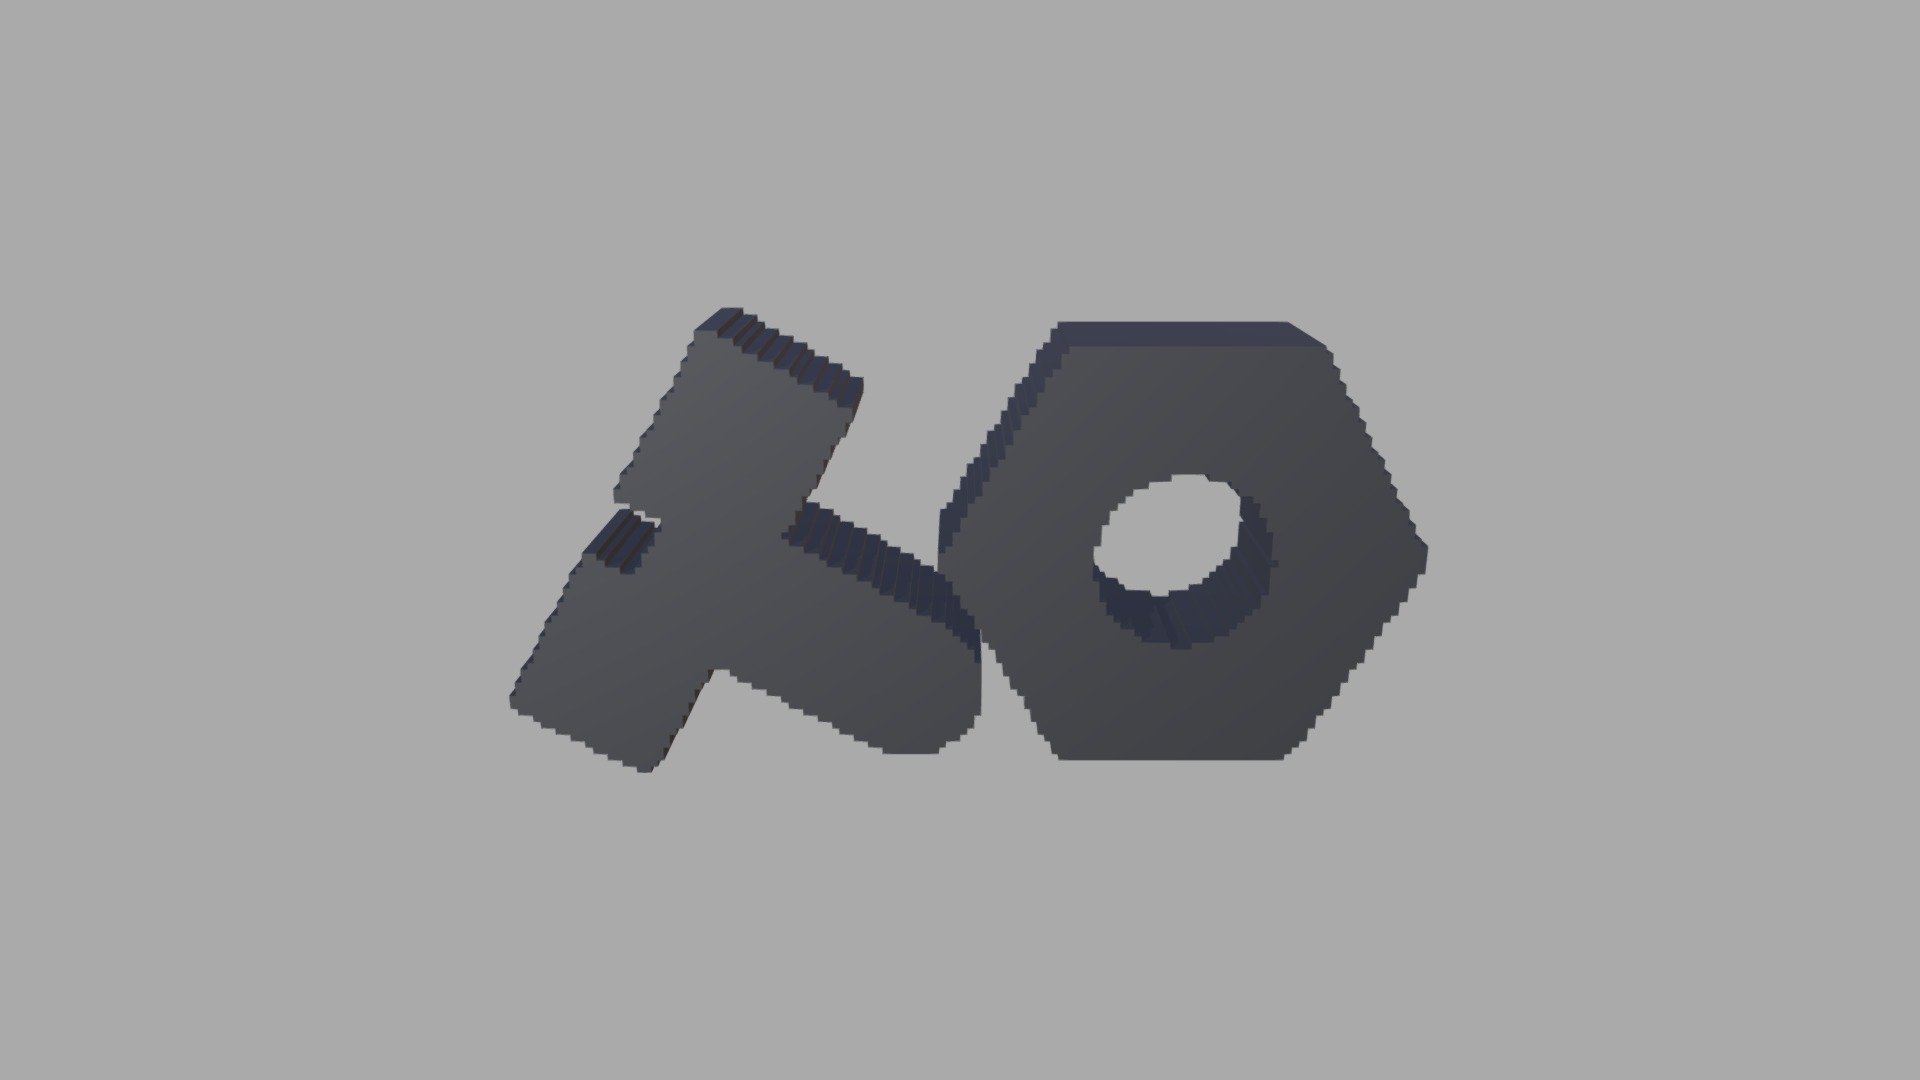 Pixel Fan art Teenage Engineering of logo - Teenage Engineering Logo - 3D model by ismaelopd 3d model